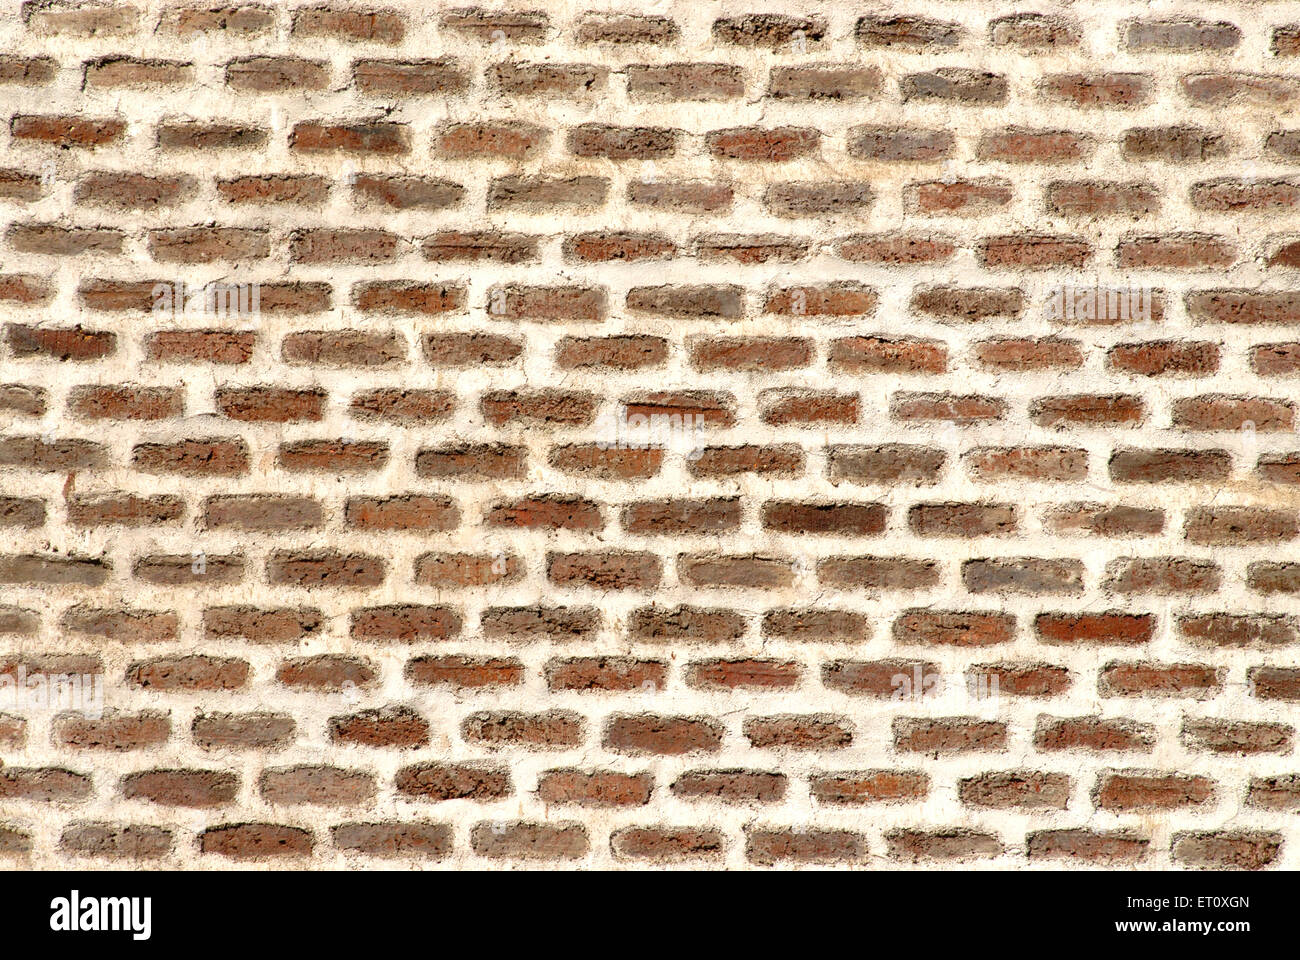 Brickwork wall, Vishrambaug Wada, Peshwa palace, Pune, Maharashtra, India Stock Photo